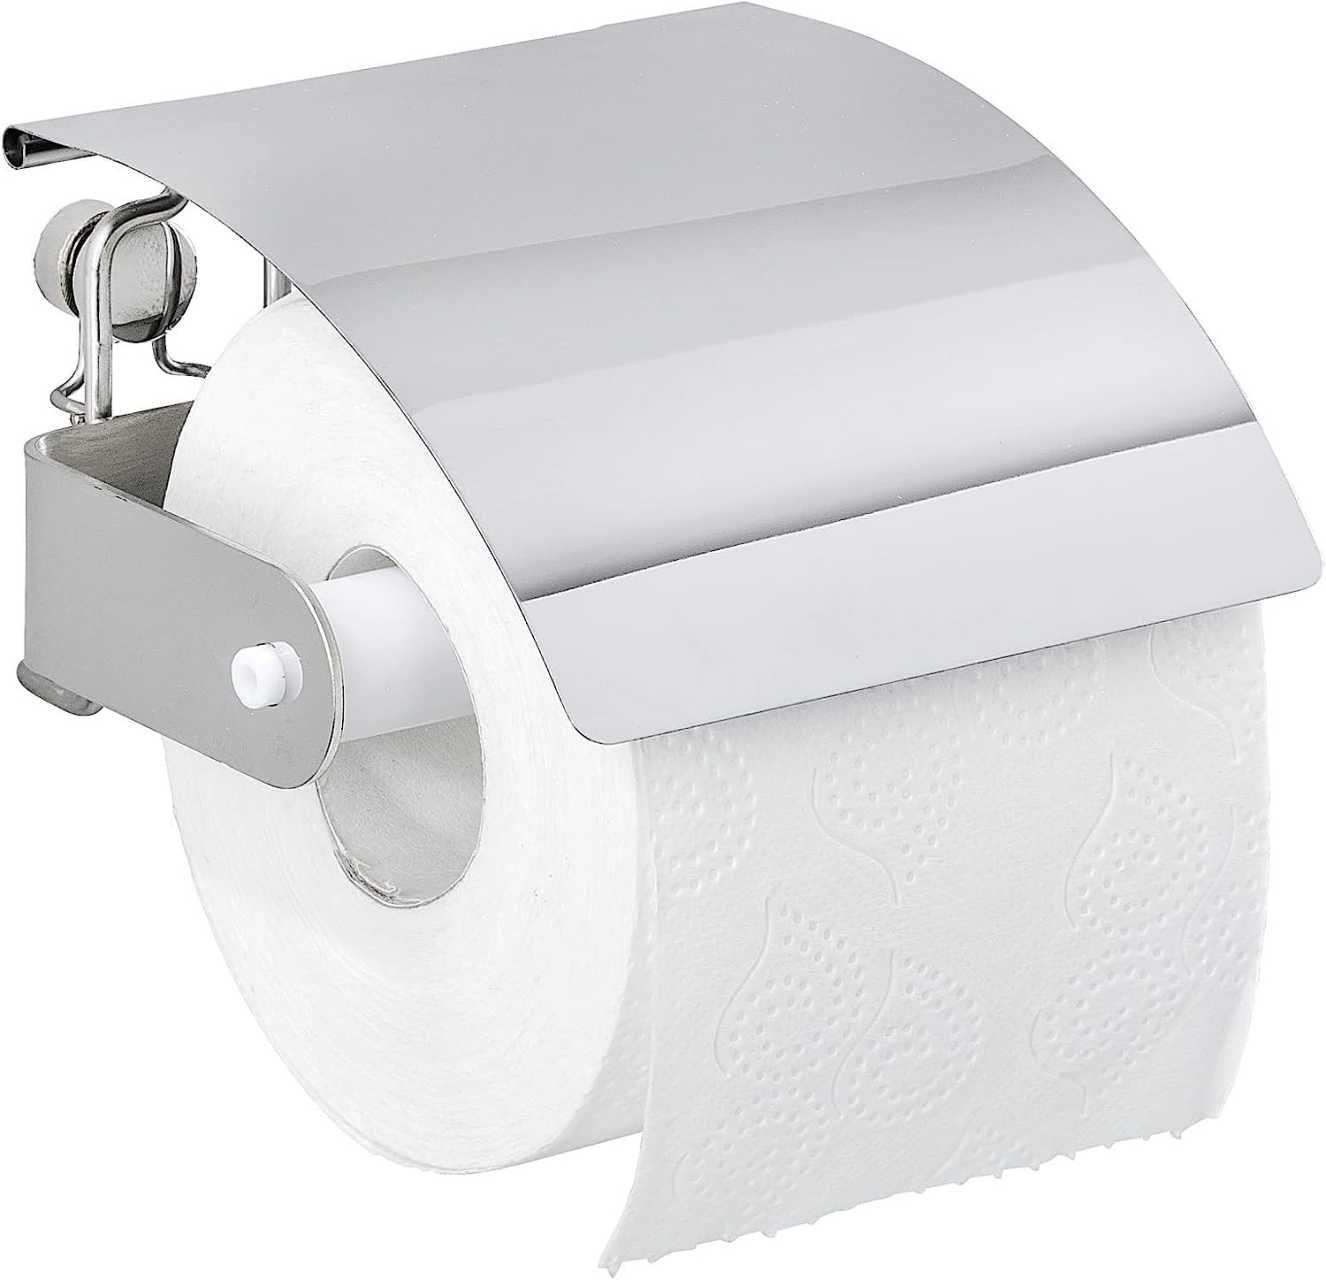 WENKO Toilettenpapierhalter Edelstahl Toiletten Klo PREMIUM Rollen Papier WC Halter Bad